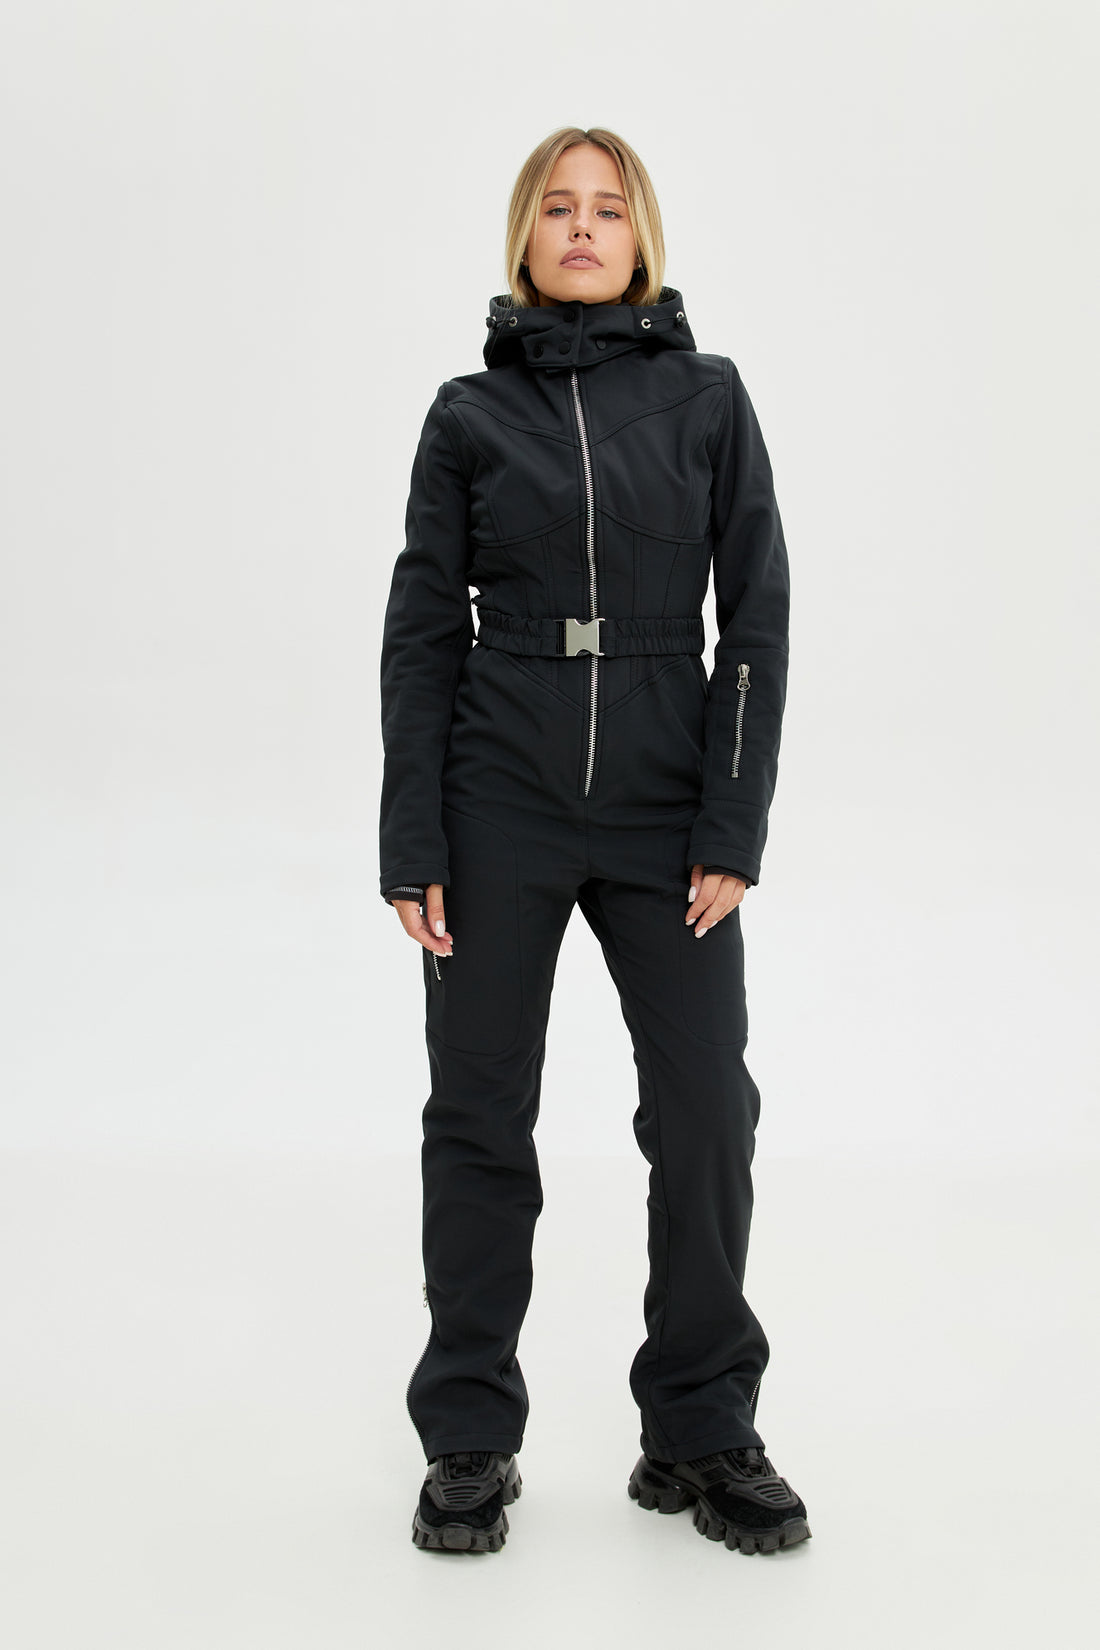 Black Skisuit With Fringe Woman Ski Suit Fringed Warm Jacket for Winter  Stylish Women's Snowsuit Ski Jumpsuit Onecie Skisuit Skianzug Damen -   UK